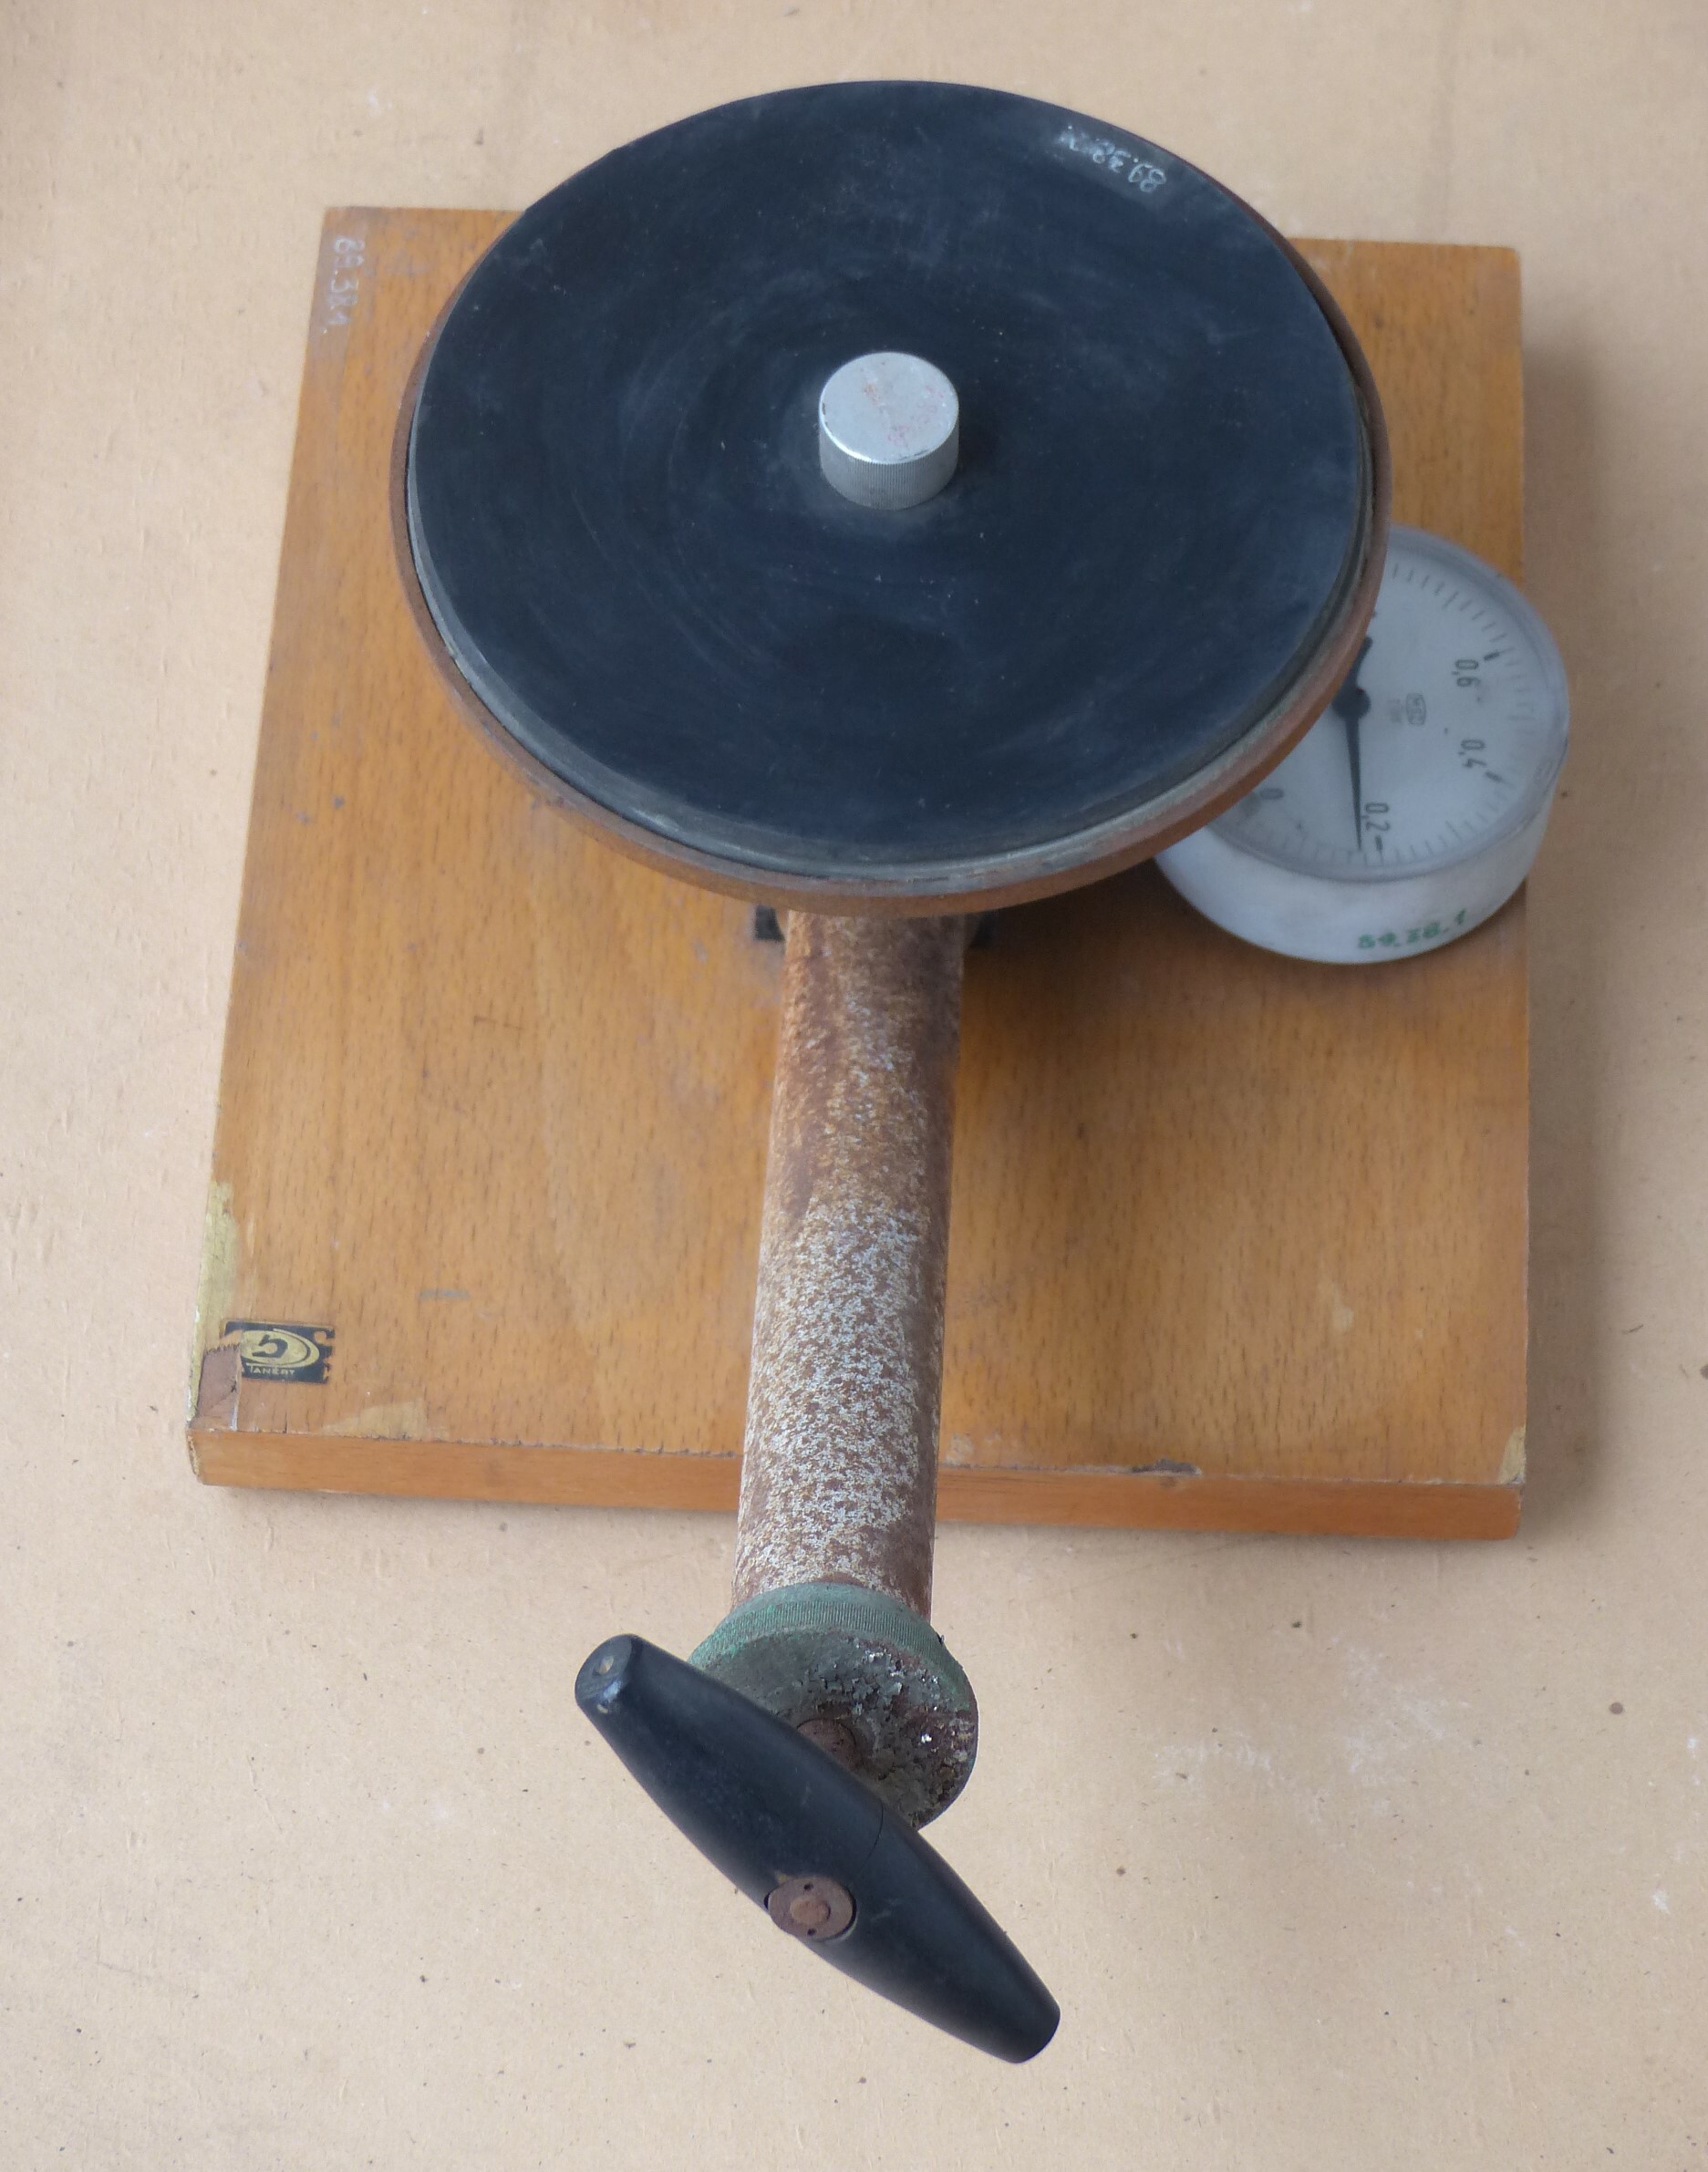 Köpüs légszivattyú iskolai kísérletekhez (Tapolcai Városi Múzeum CC BY-NC-SA)